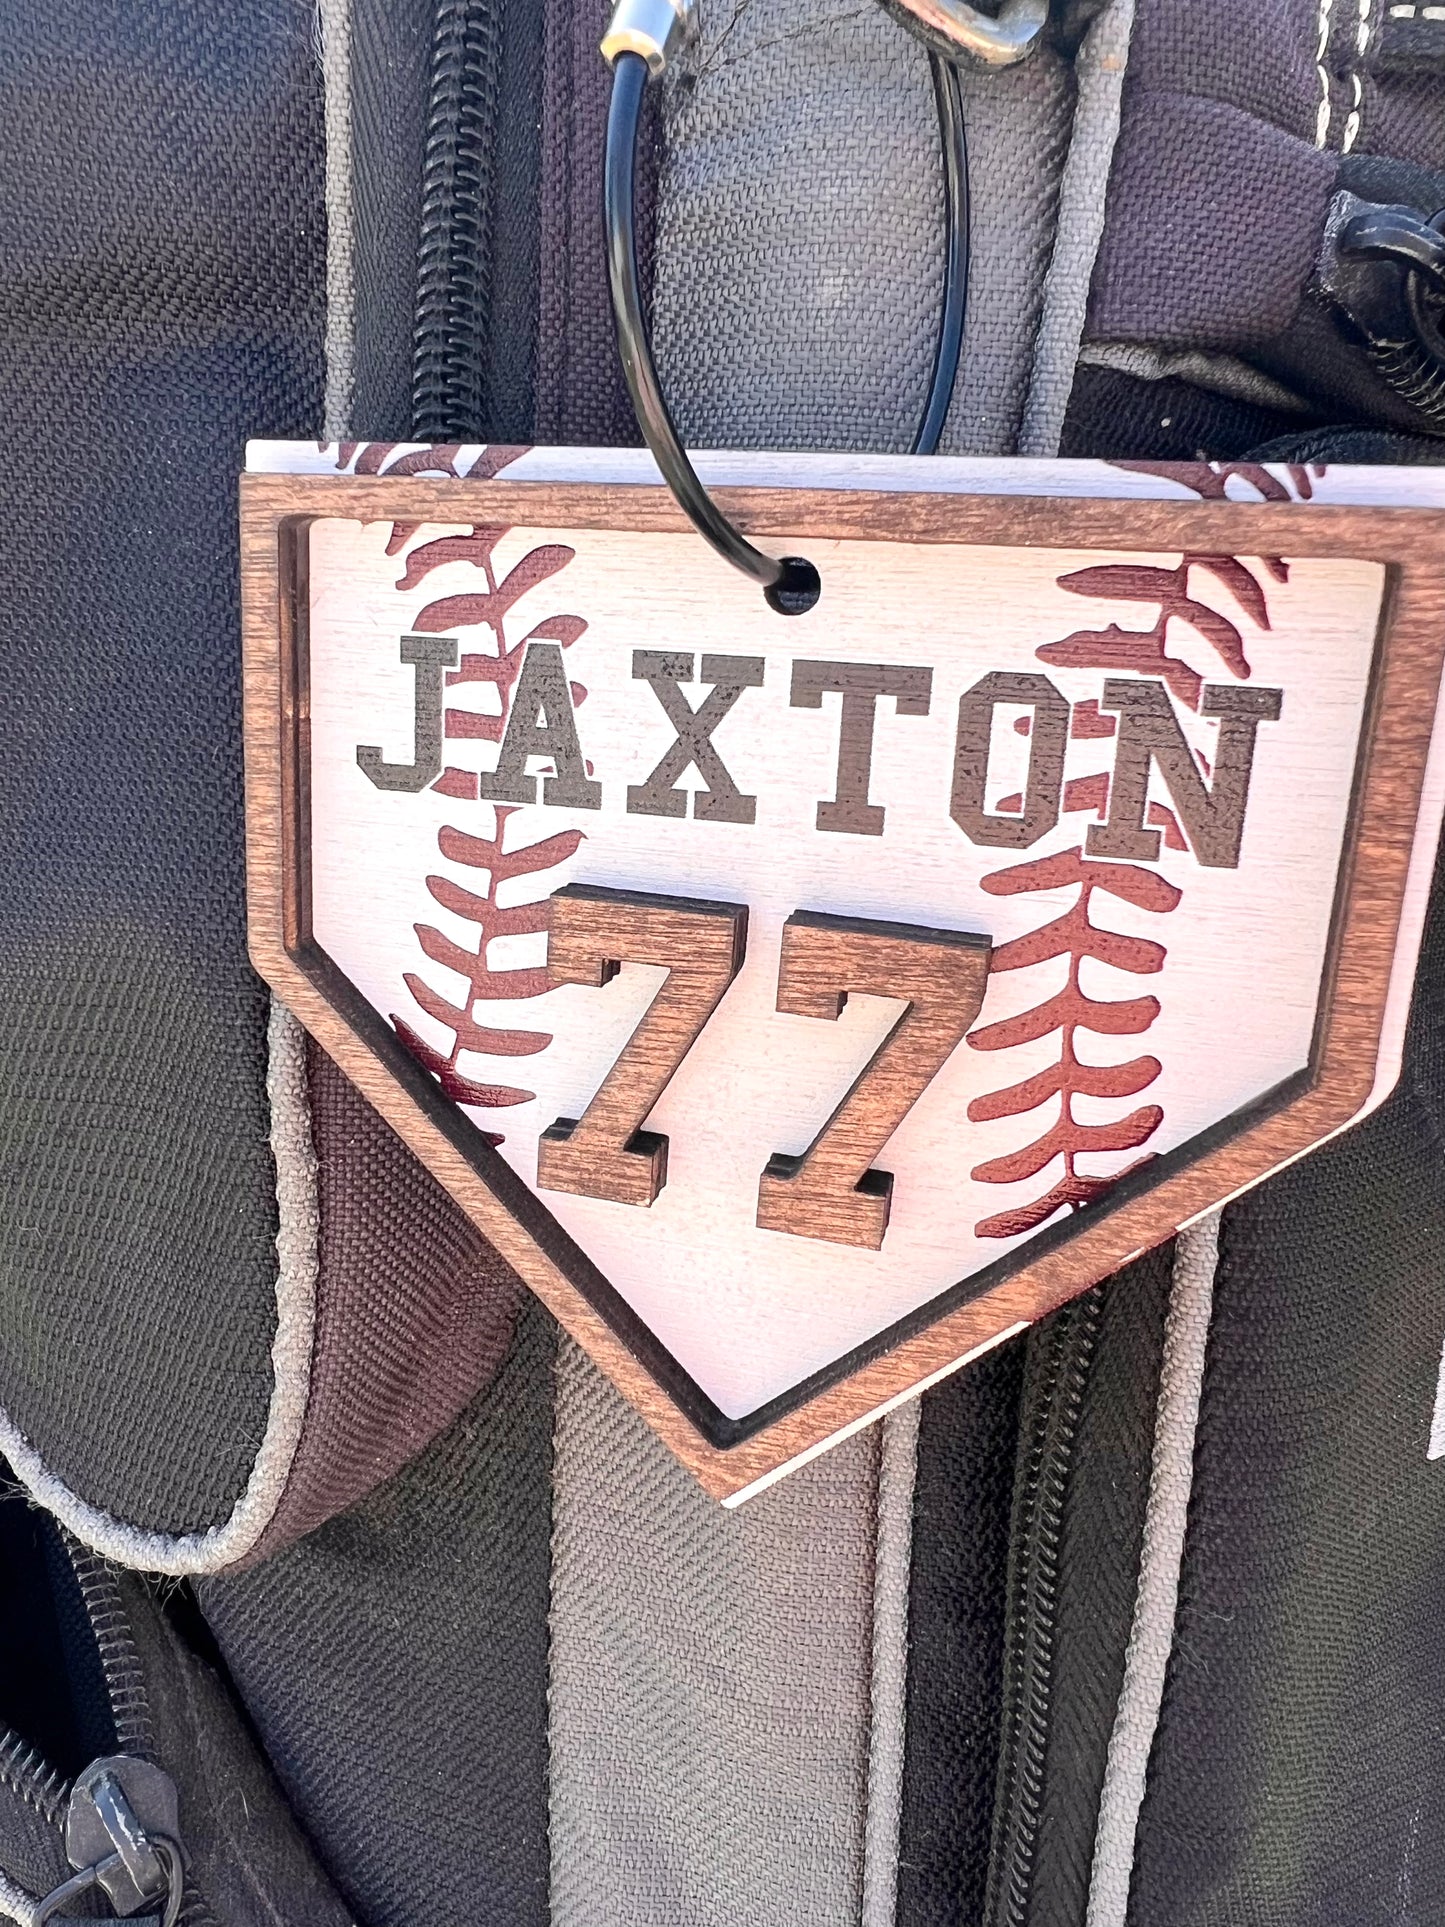 Baseball bag name tag, softball bag tag, home plate